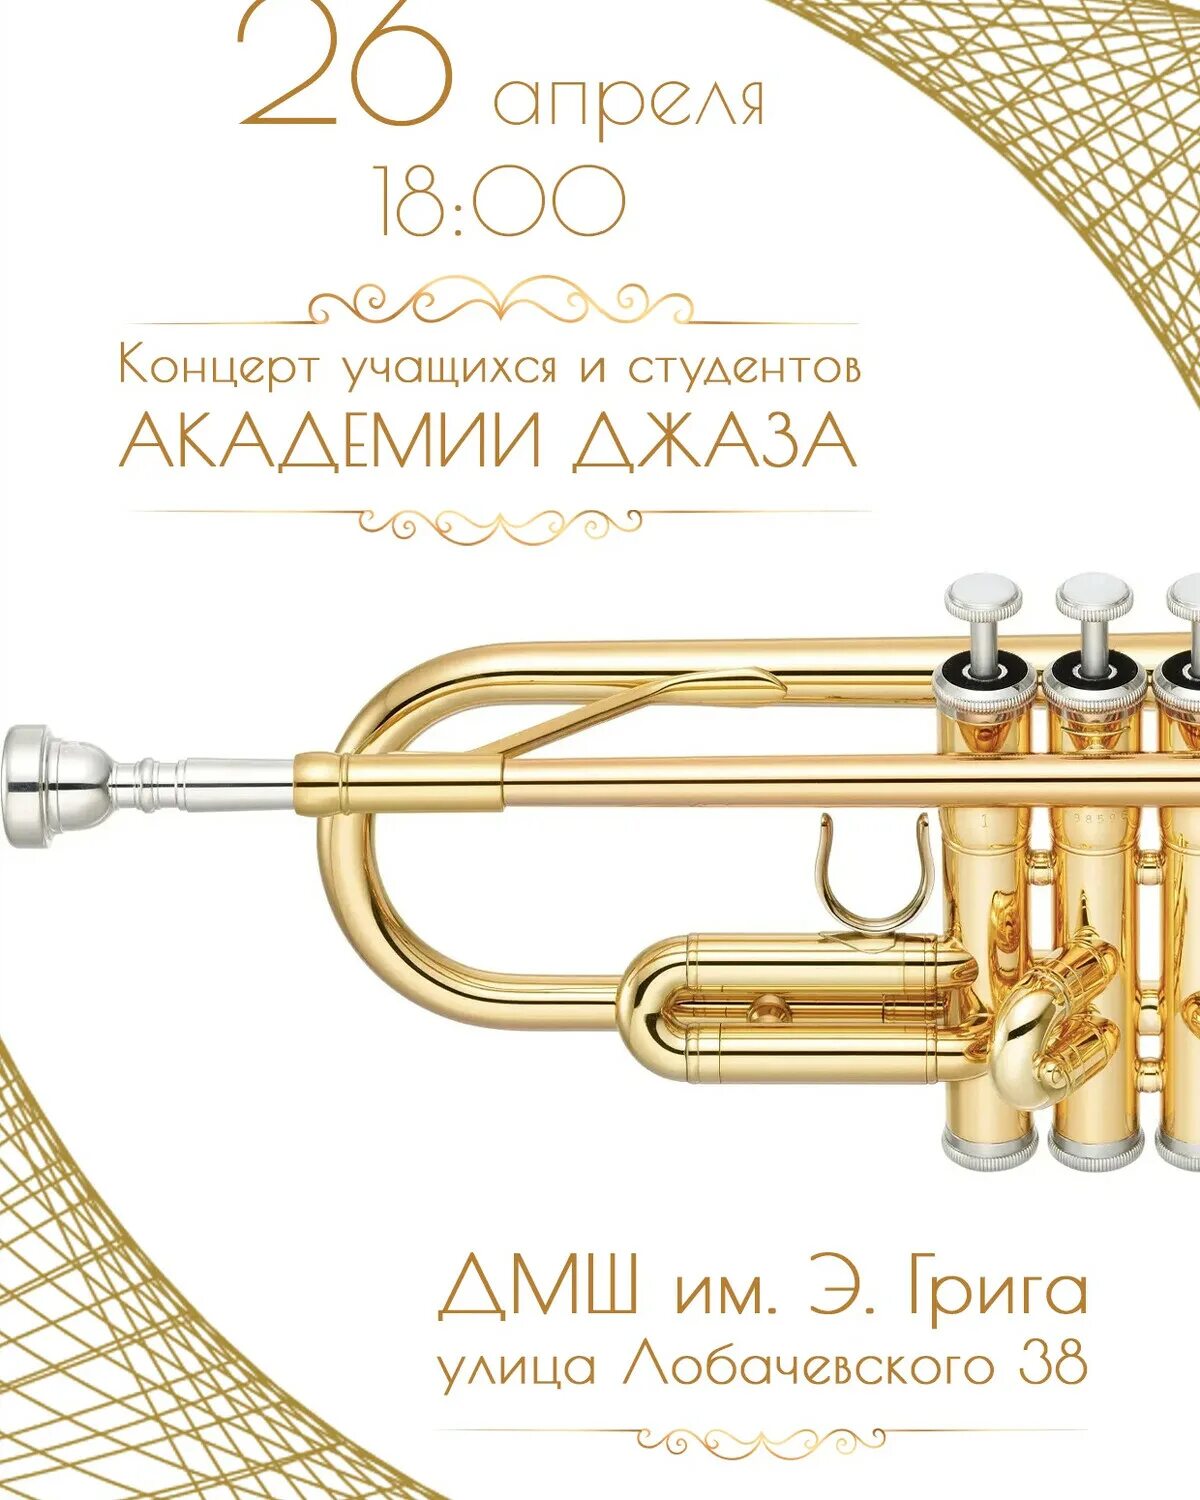 Академия джаза. Академия джаза Москва. Печеный Академия джаза. Академия джаза логотип.